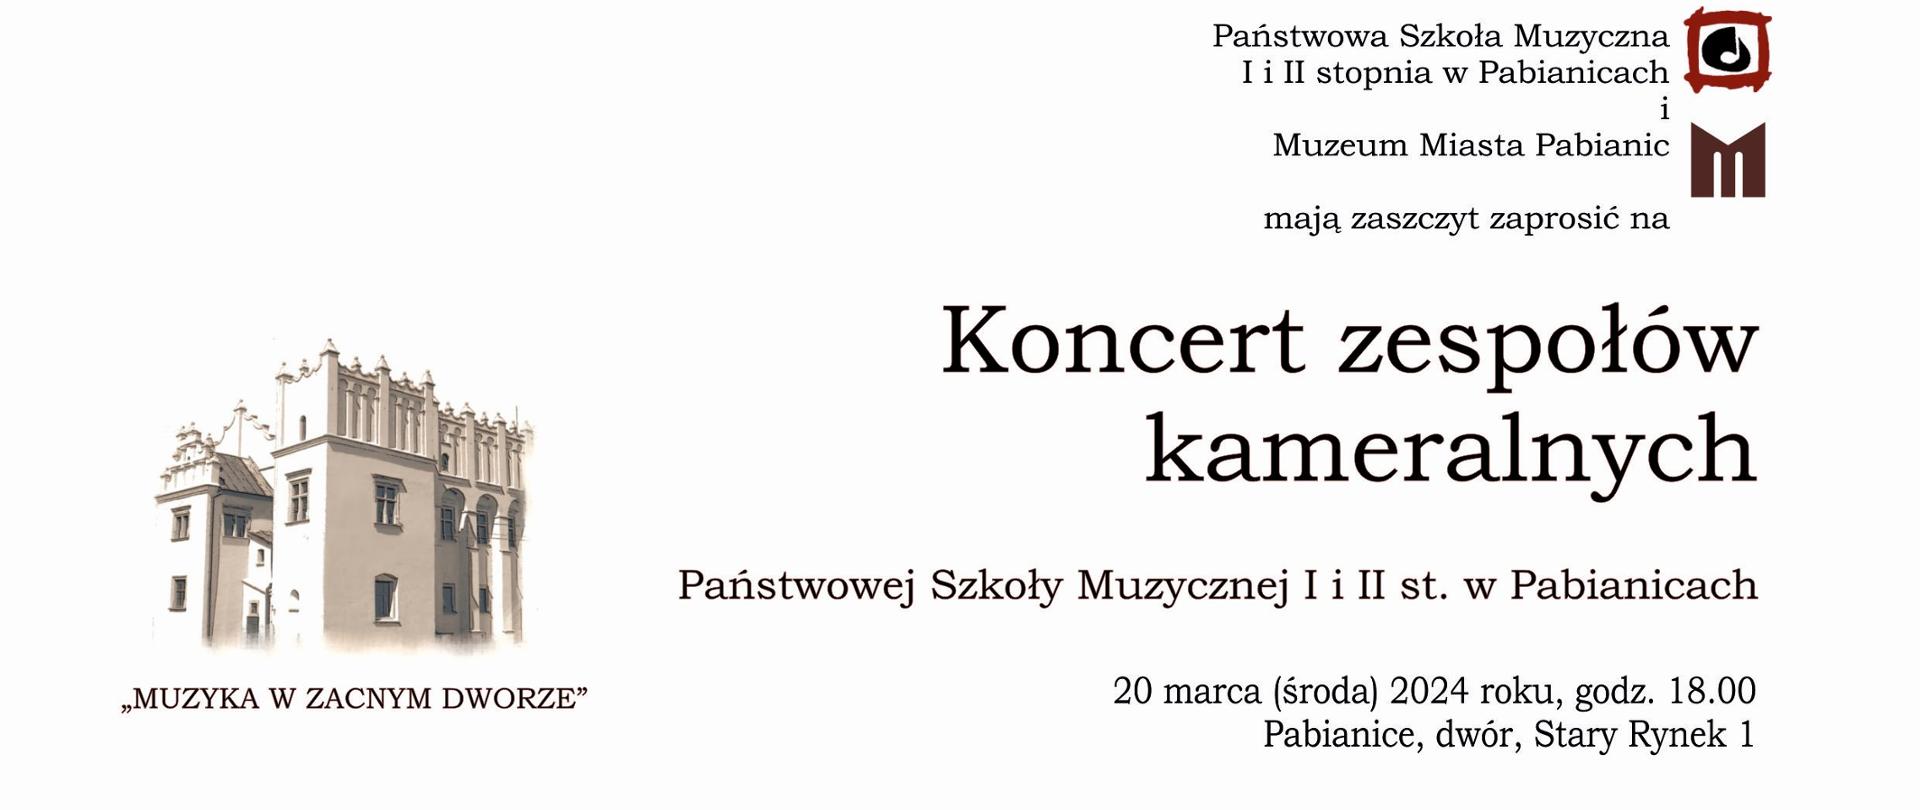 Jasna grafika z umieszczonym w tle budynkiem Muzeum Miasta Pabianic informująca o Koncercie zespołów kameralnych w dniu 20.03.2024 r. o godz. 18.